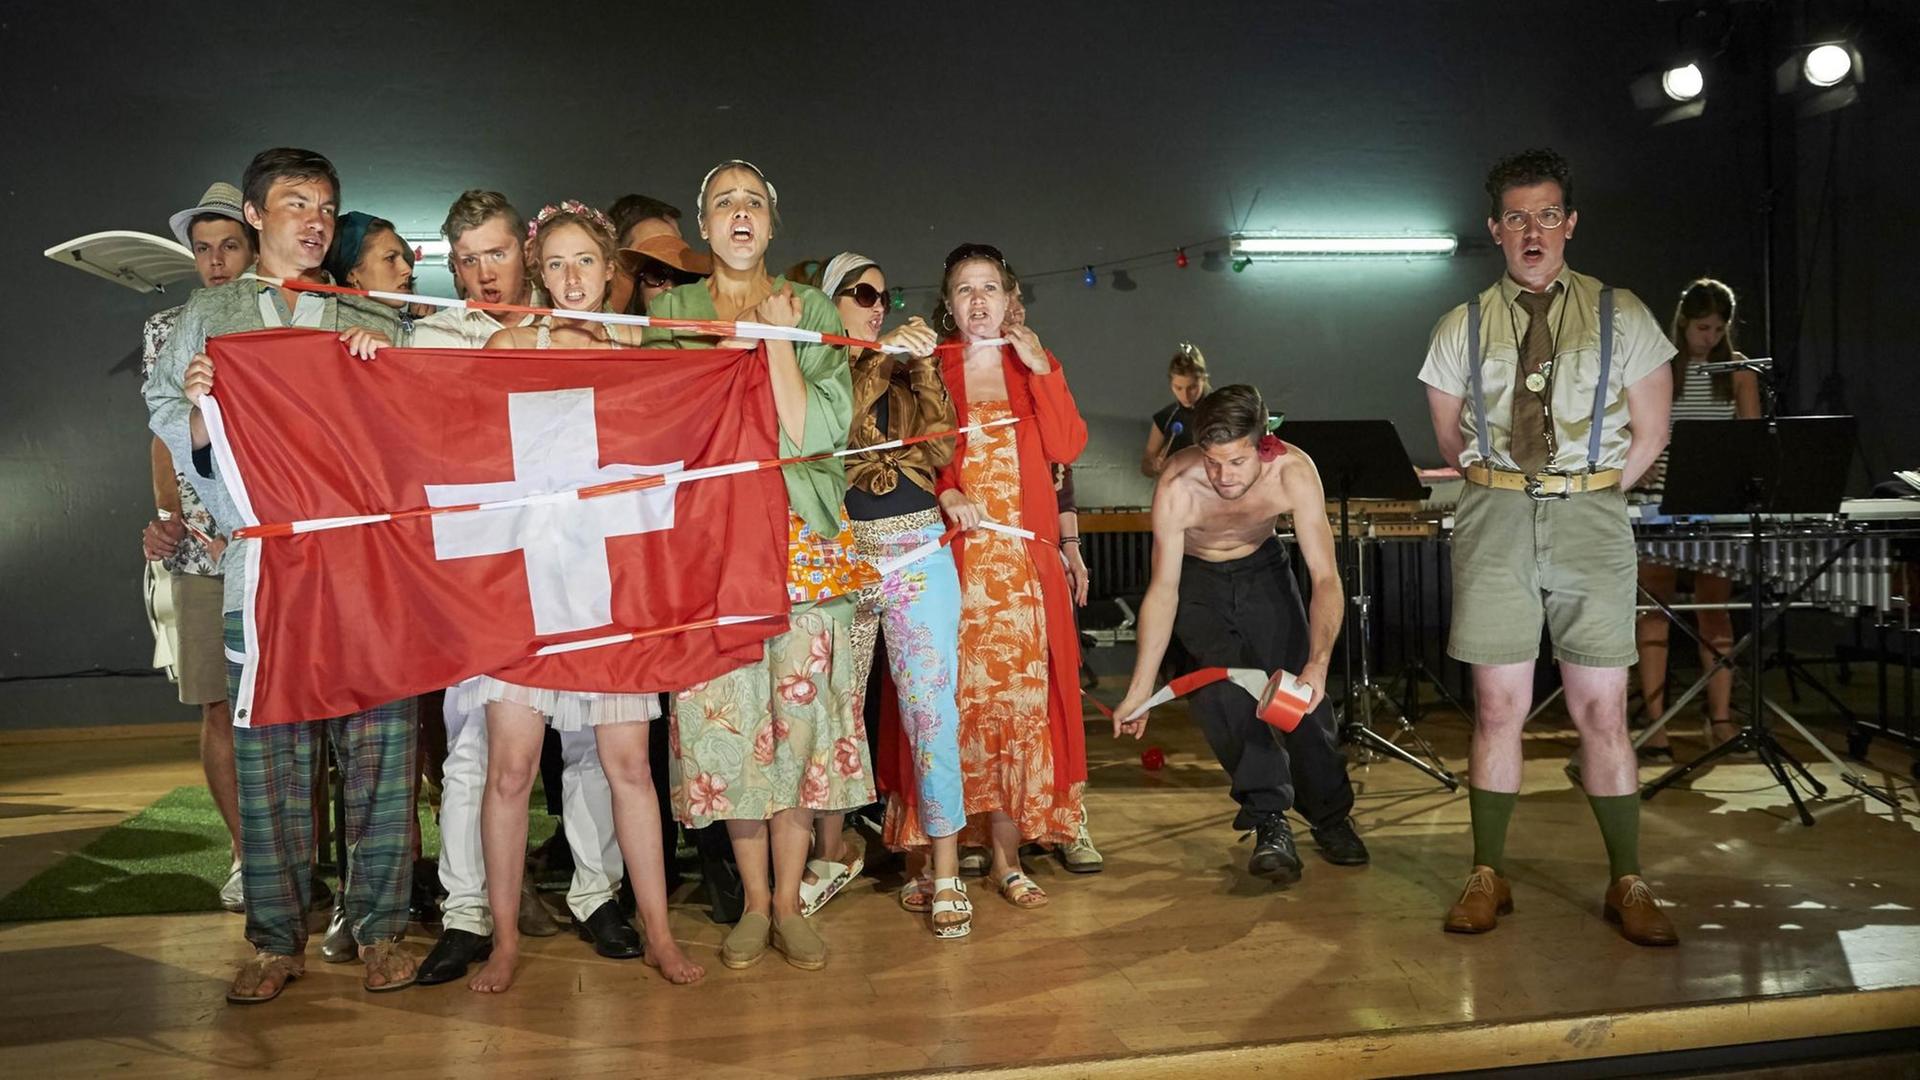 Generlprobe der Oper "Eine Schweizer Familie" in der Aula dar alpinen Mittelschule Davos am Davos Festivl 2016, vom 6. - 20. August 2016. Thema "Familienzone".